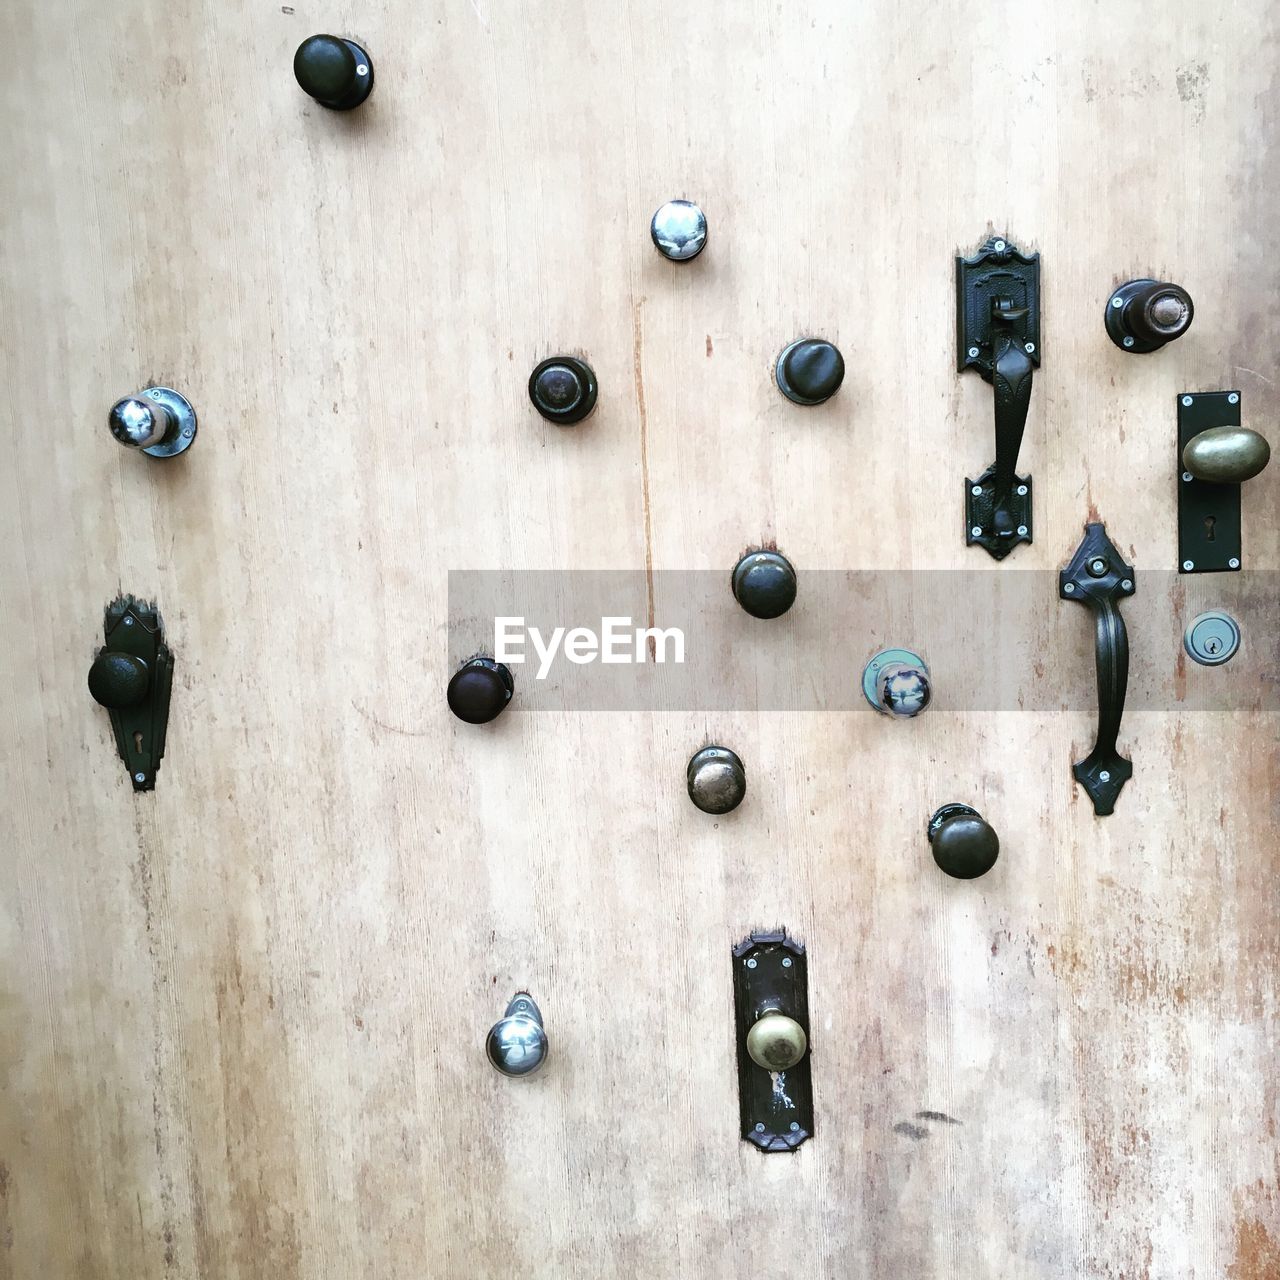 Doorknobs and handles on door